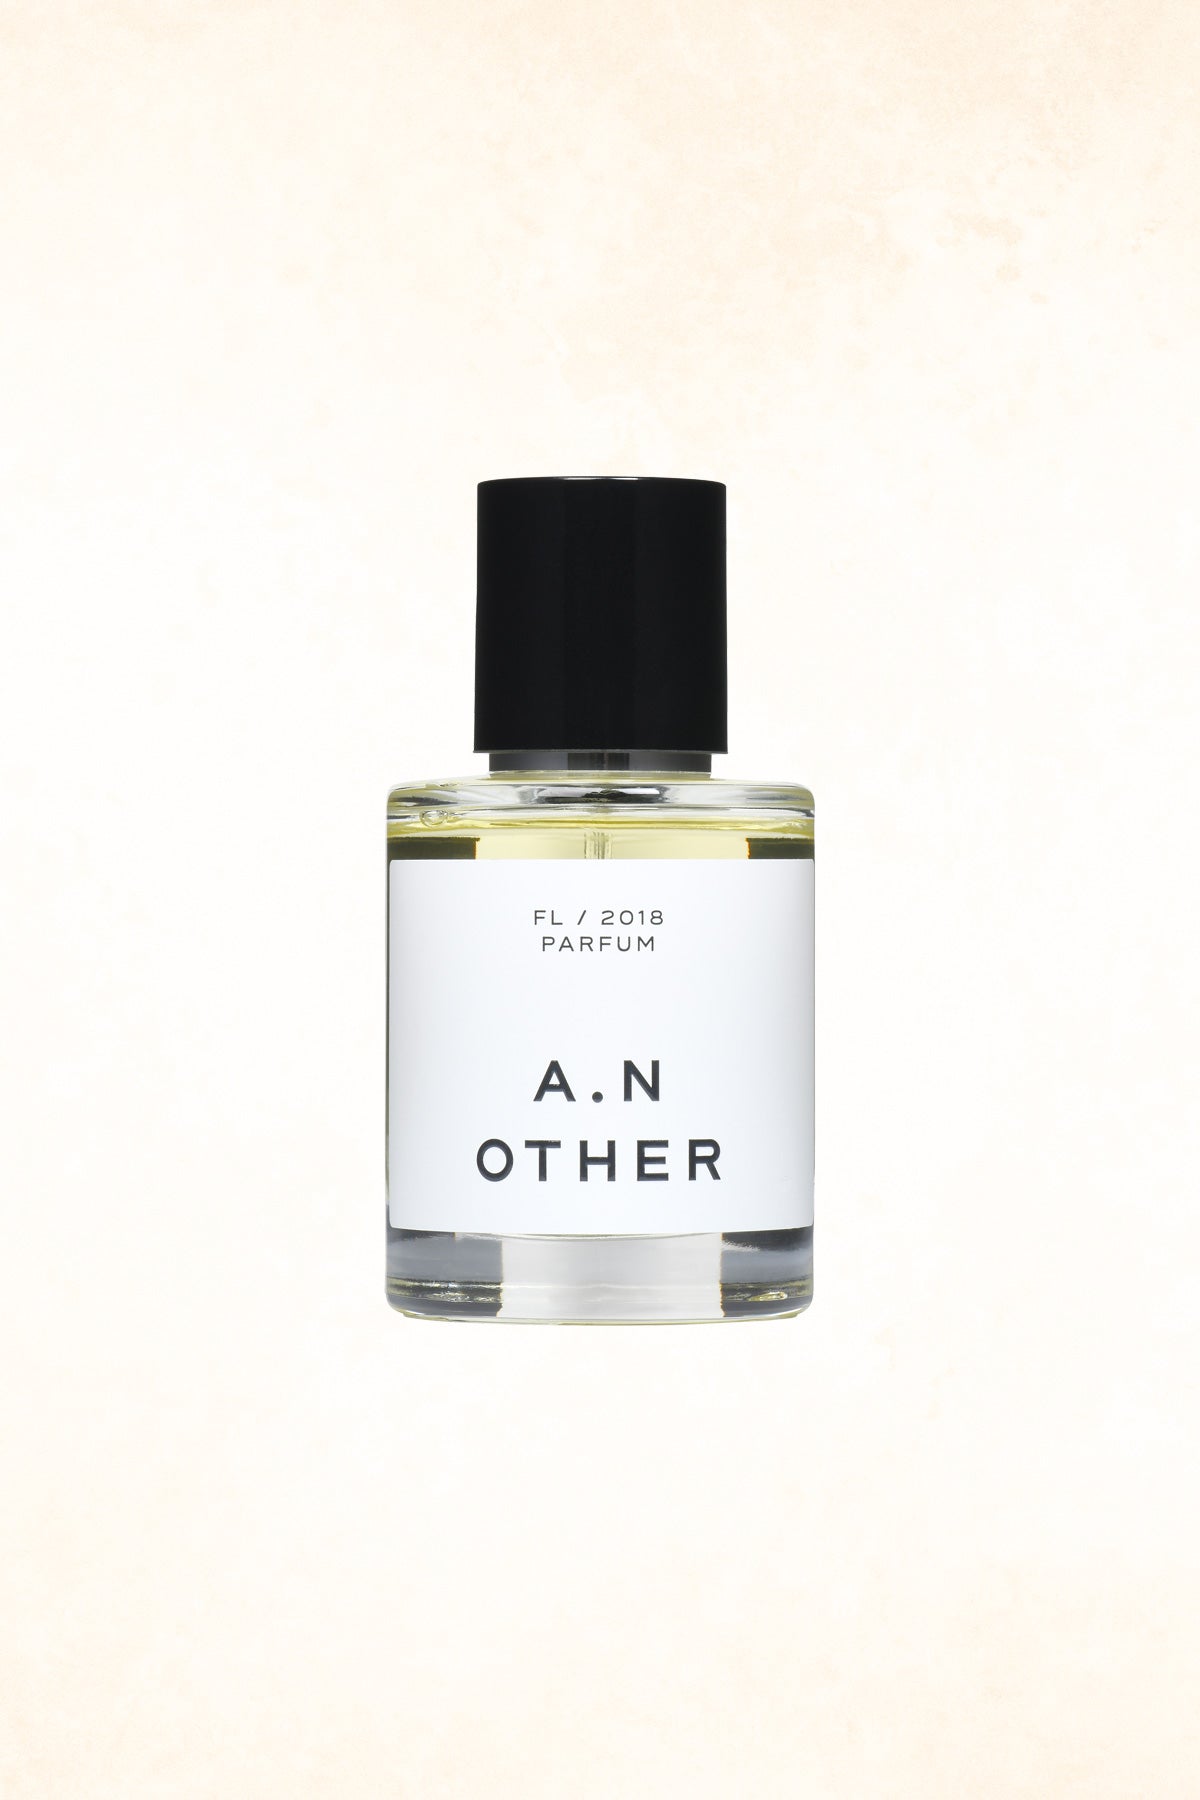 A.N OTHER – FL/2018 Parfum - 50 ml